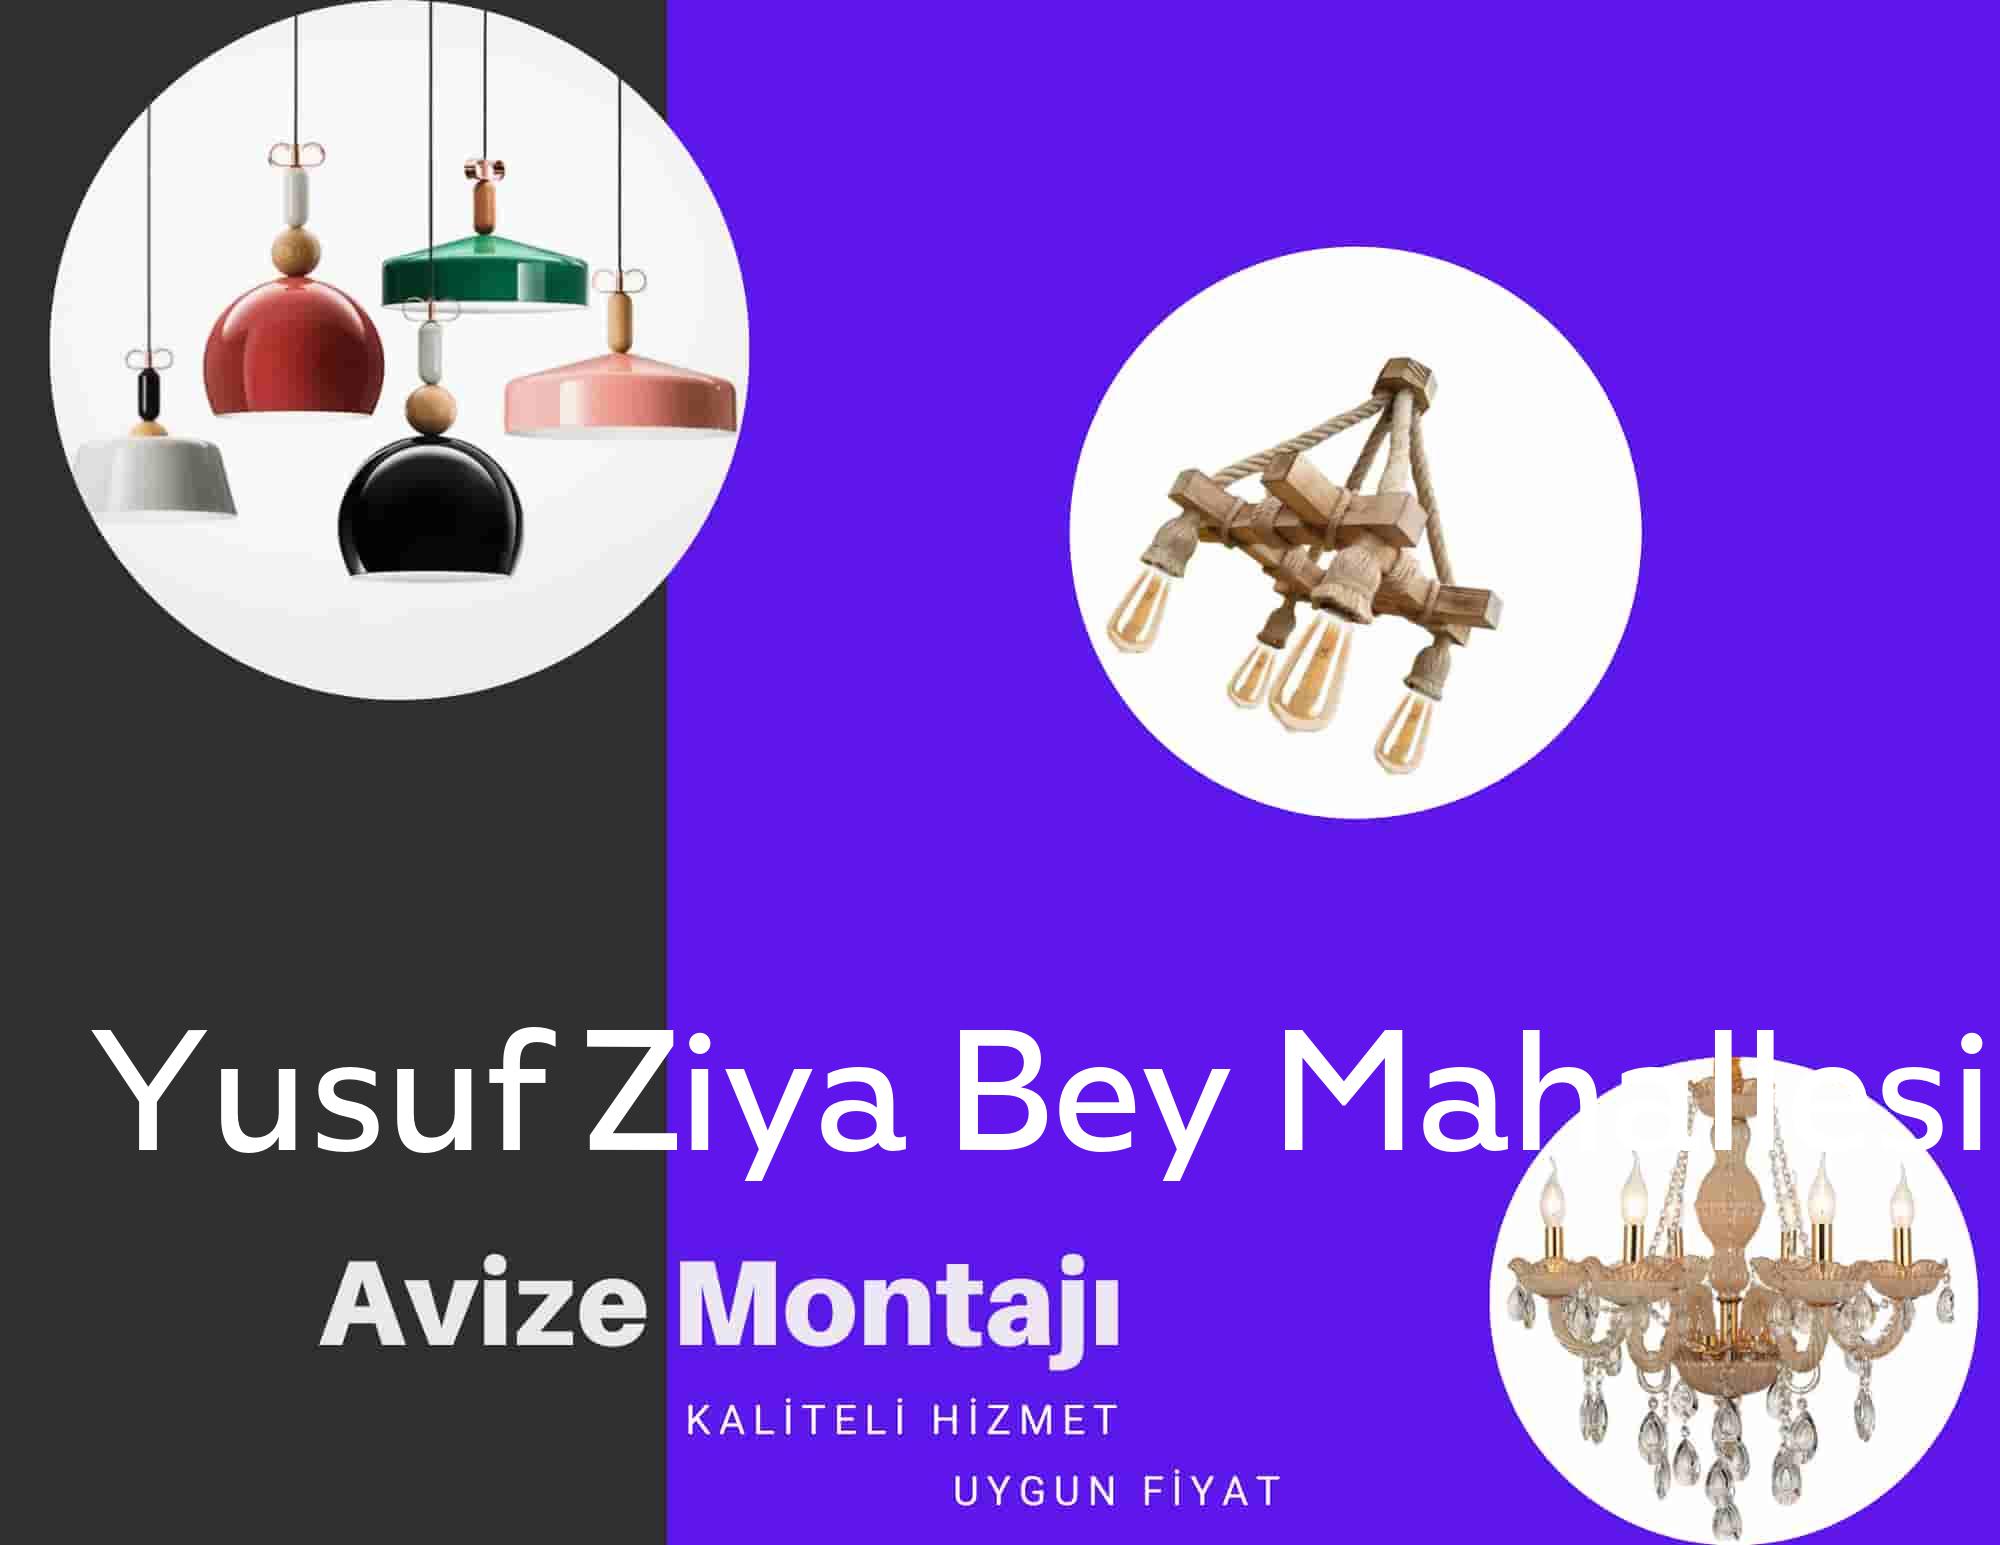 Yusuf Ziya Bey Mahalleside avize montajı yapan yerler arıyorsanız elektrikcicagir anında size profesyonel avize montajı ustasını yönlendirir.